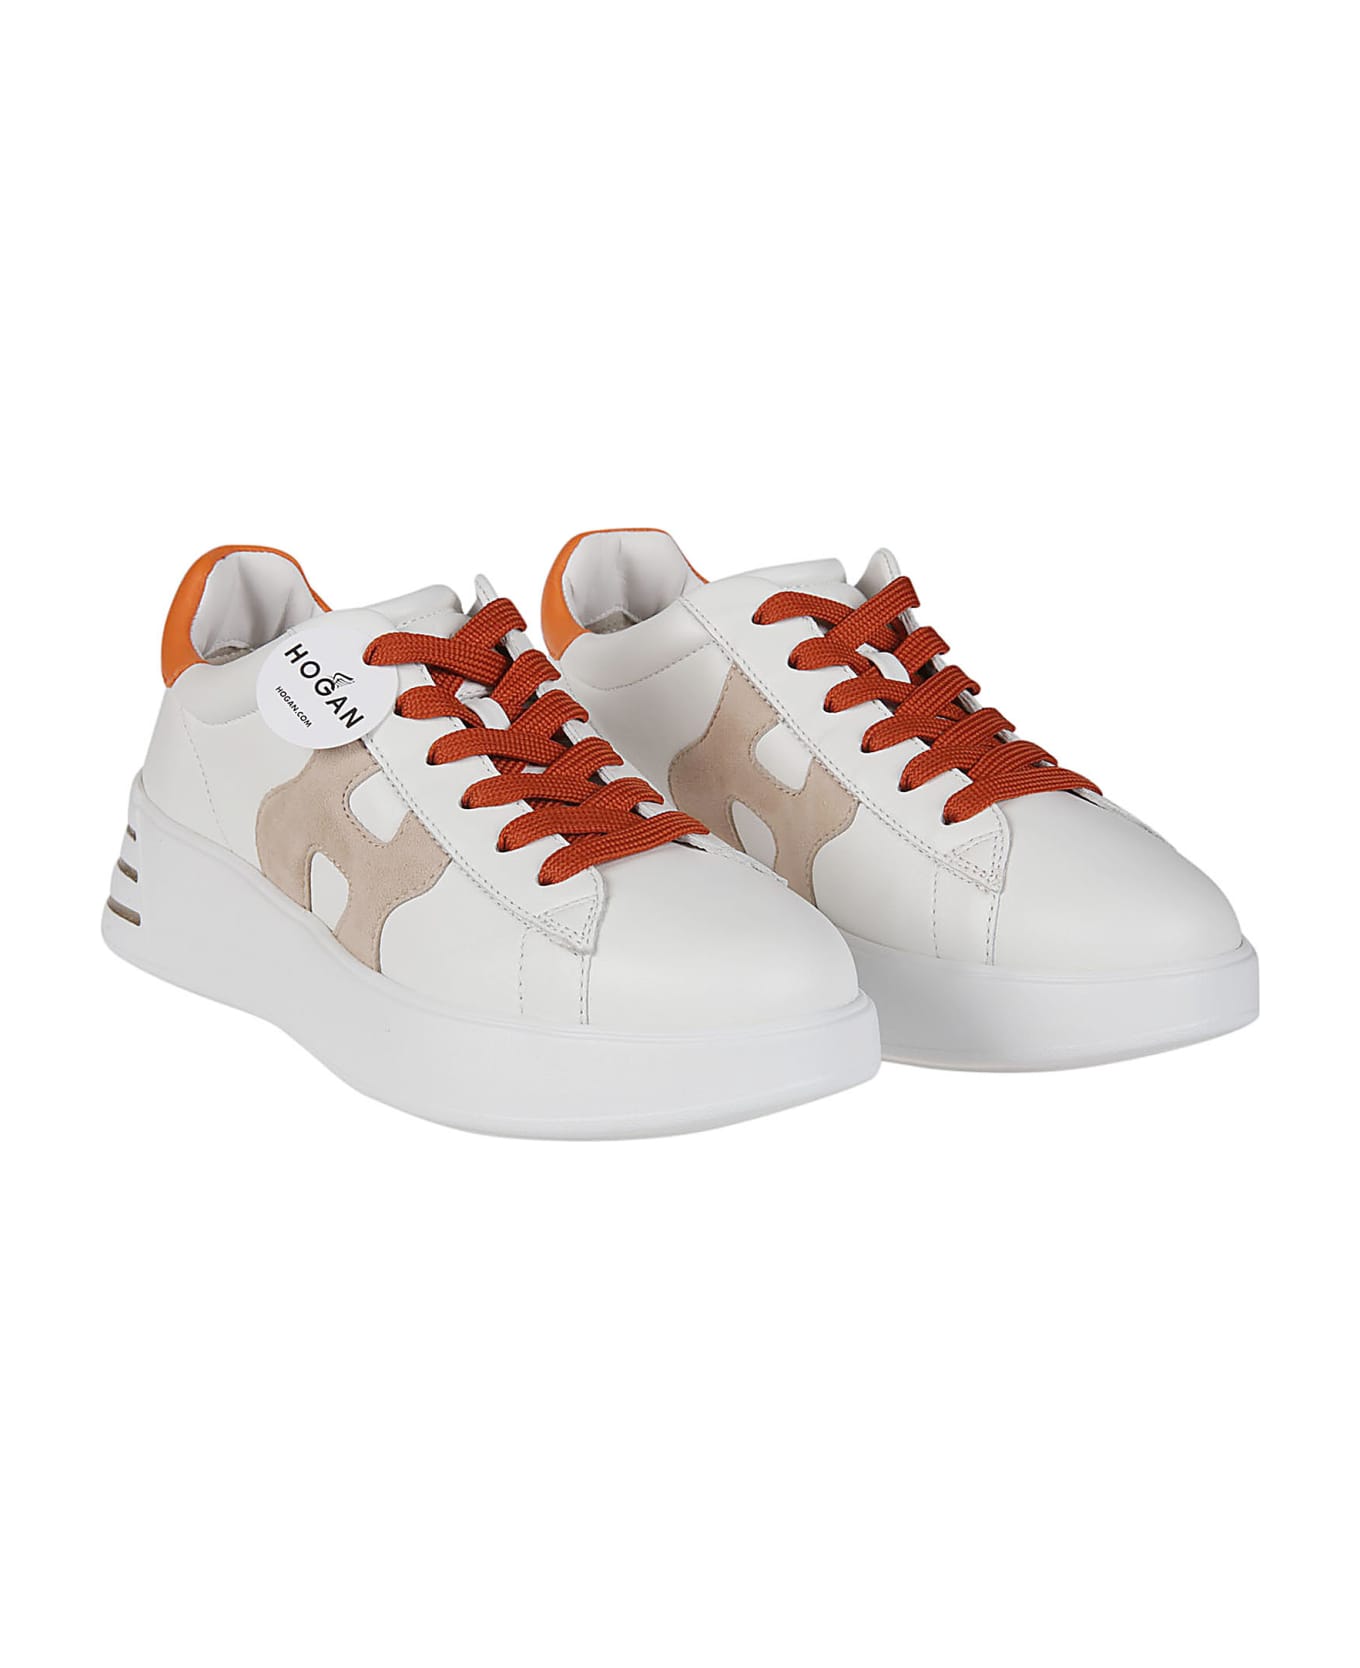 Hogan Rebel H564 Sneakers - Yef Bianco/zenzero スニーカー